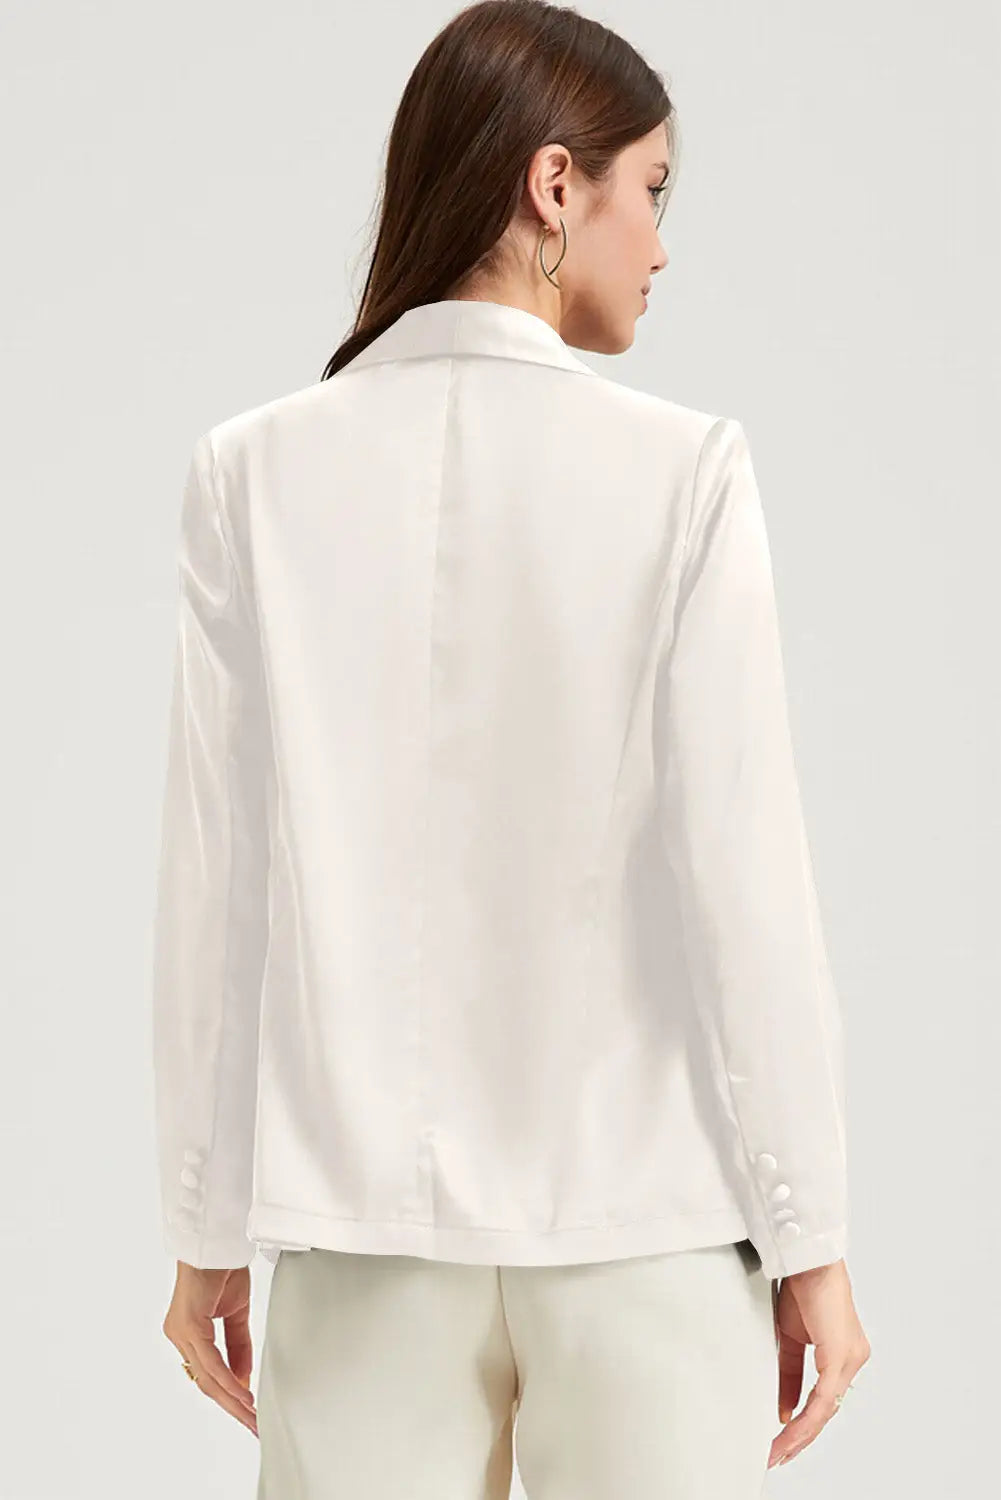 White pocketed single button lapel neck blazer - blazers